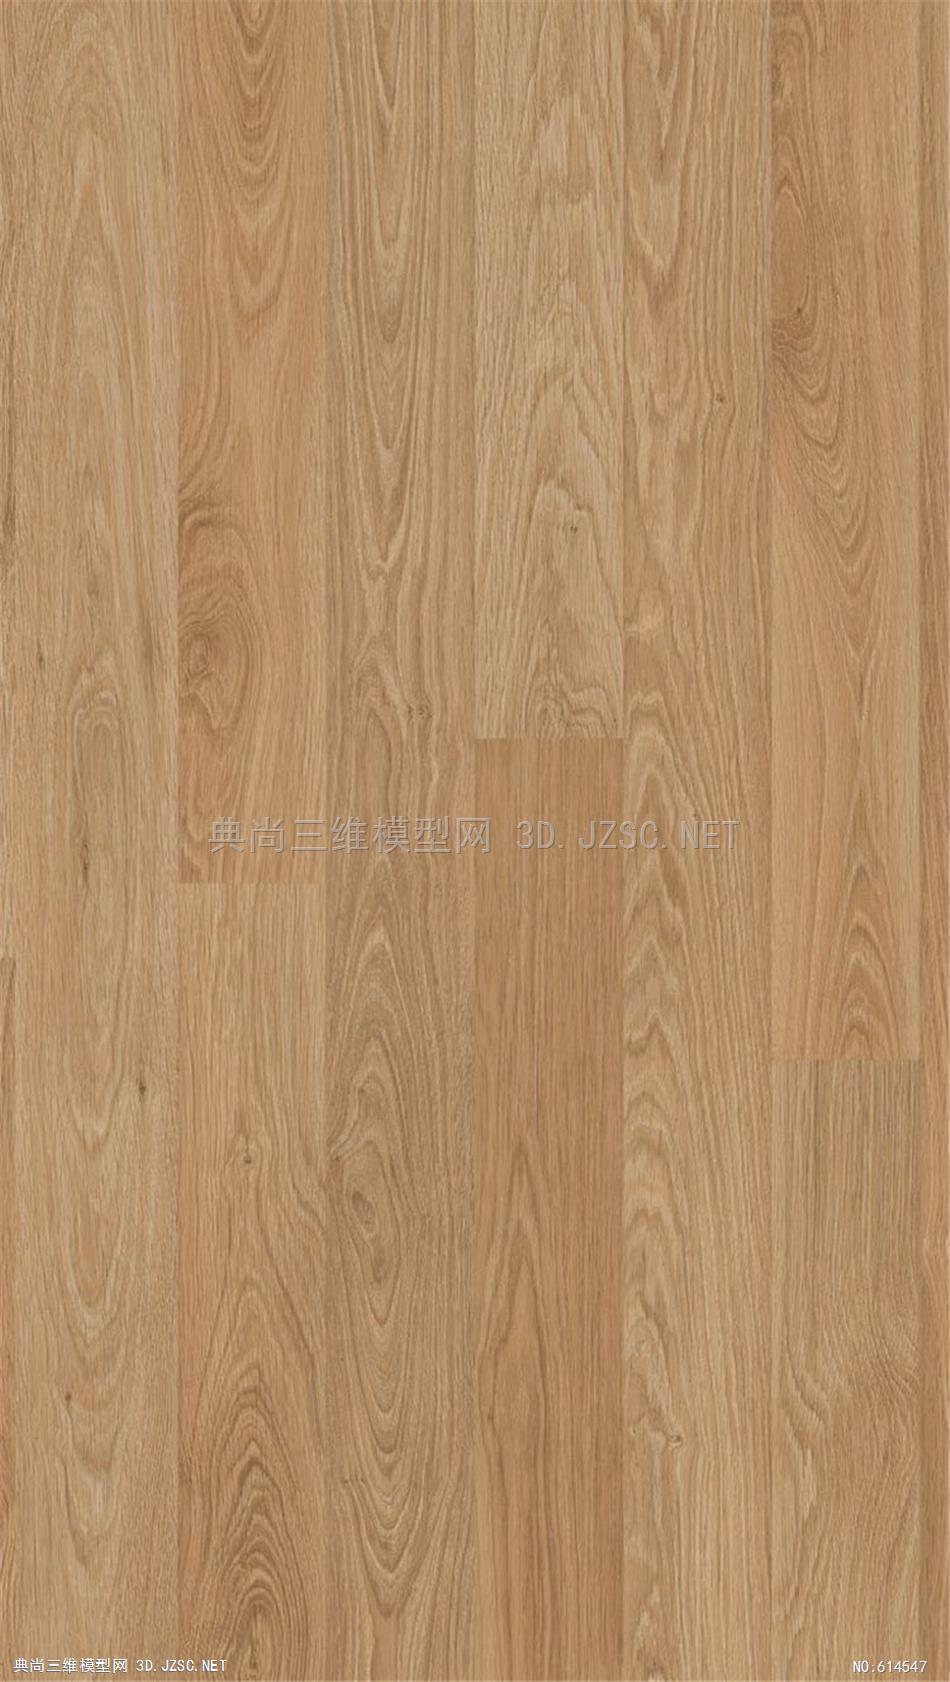 木饰面 木纹 木材  高清材质贴图 (338)